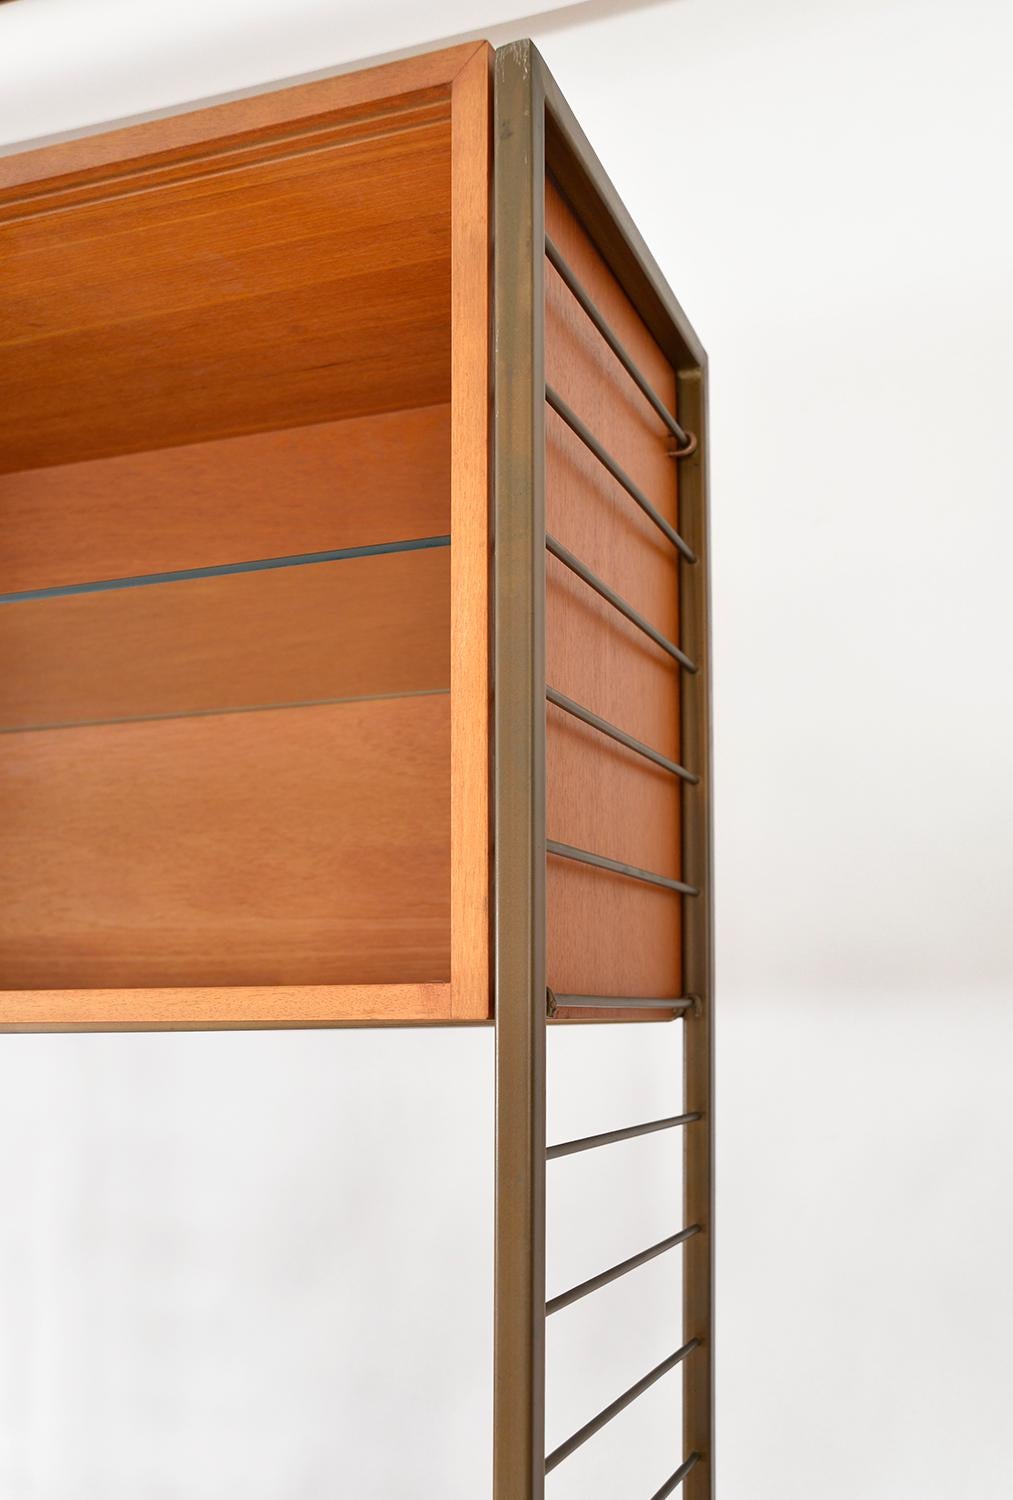 60s Staples Ladderax Freestanding Modular Teak Shelving System Room Divider Desk 5